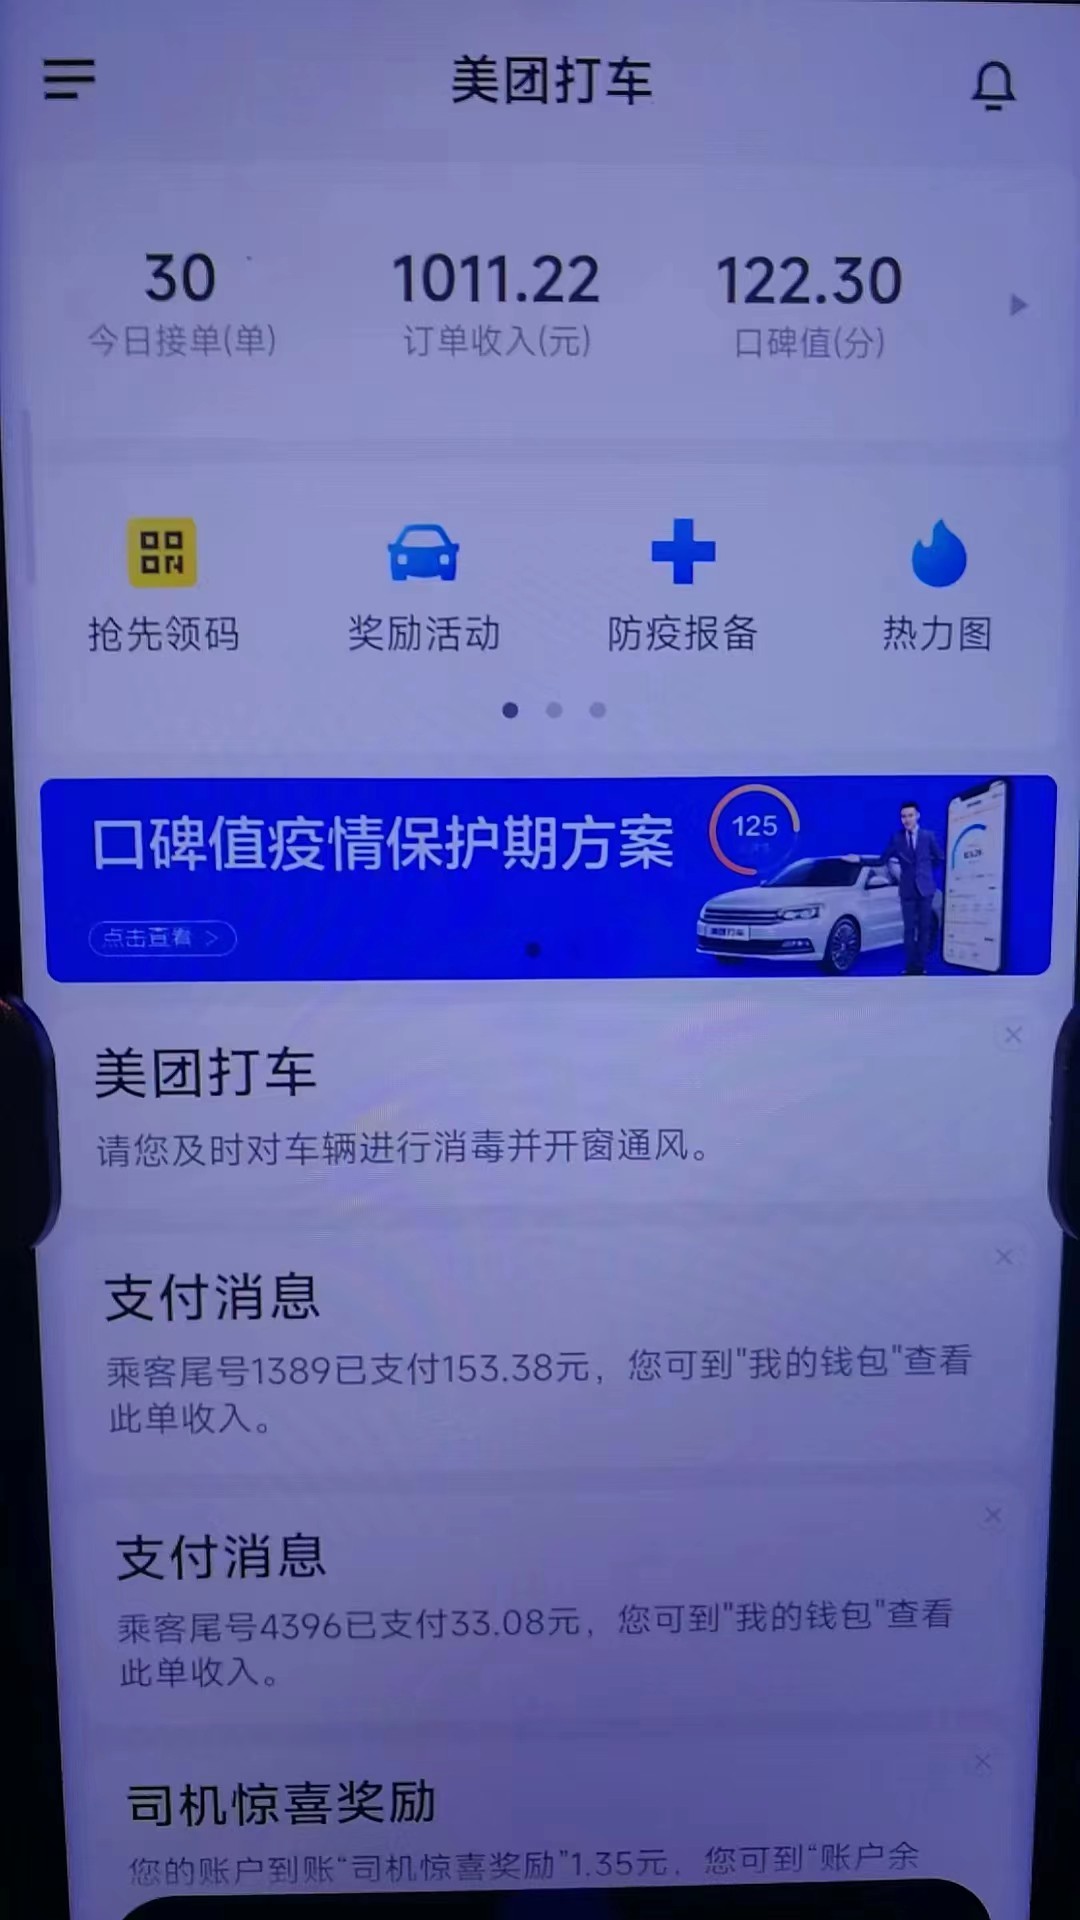 主变量上海靠谱的网约车租赁公司行业内幕